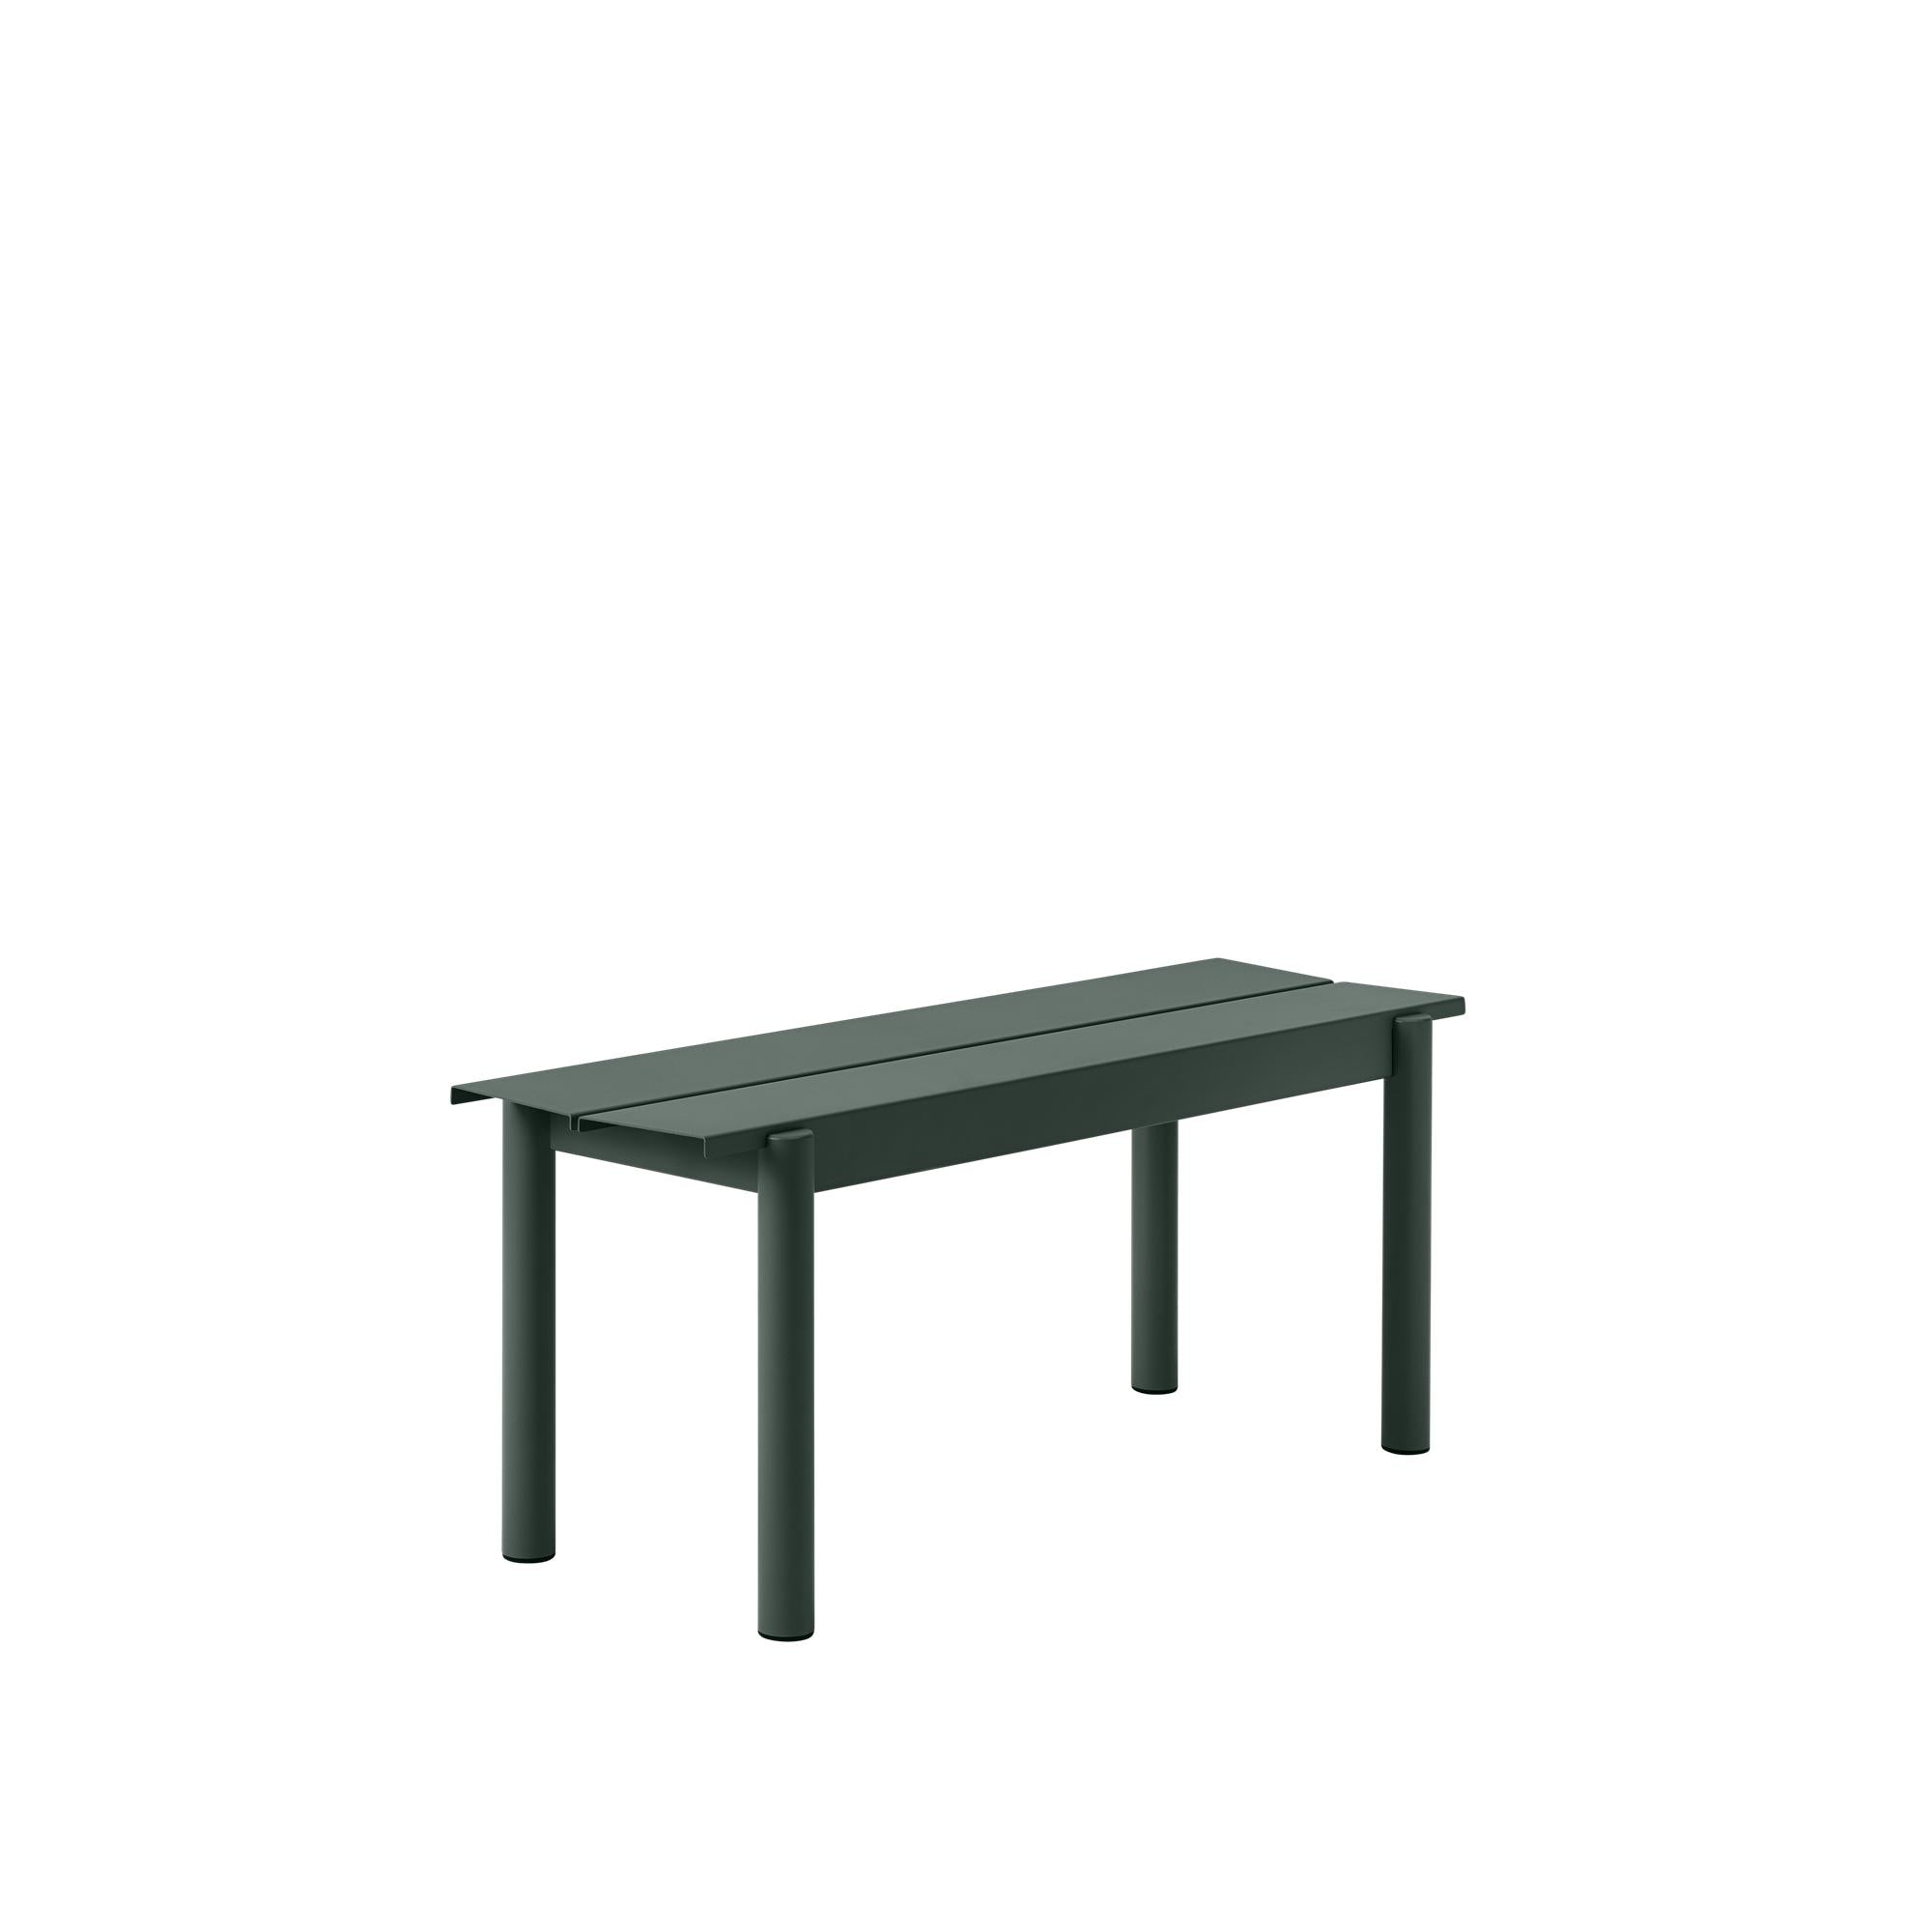 Lineární ocelová lavička MUUTO L 110 cm, zelená